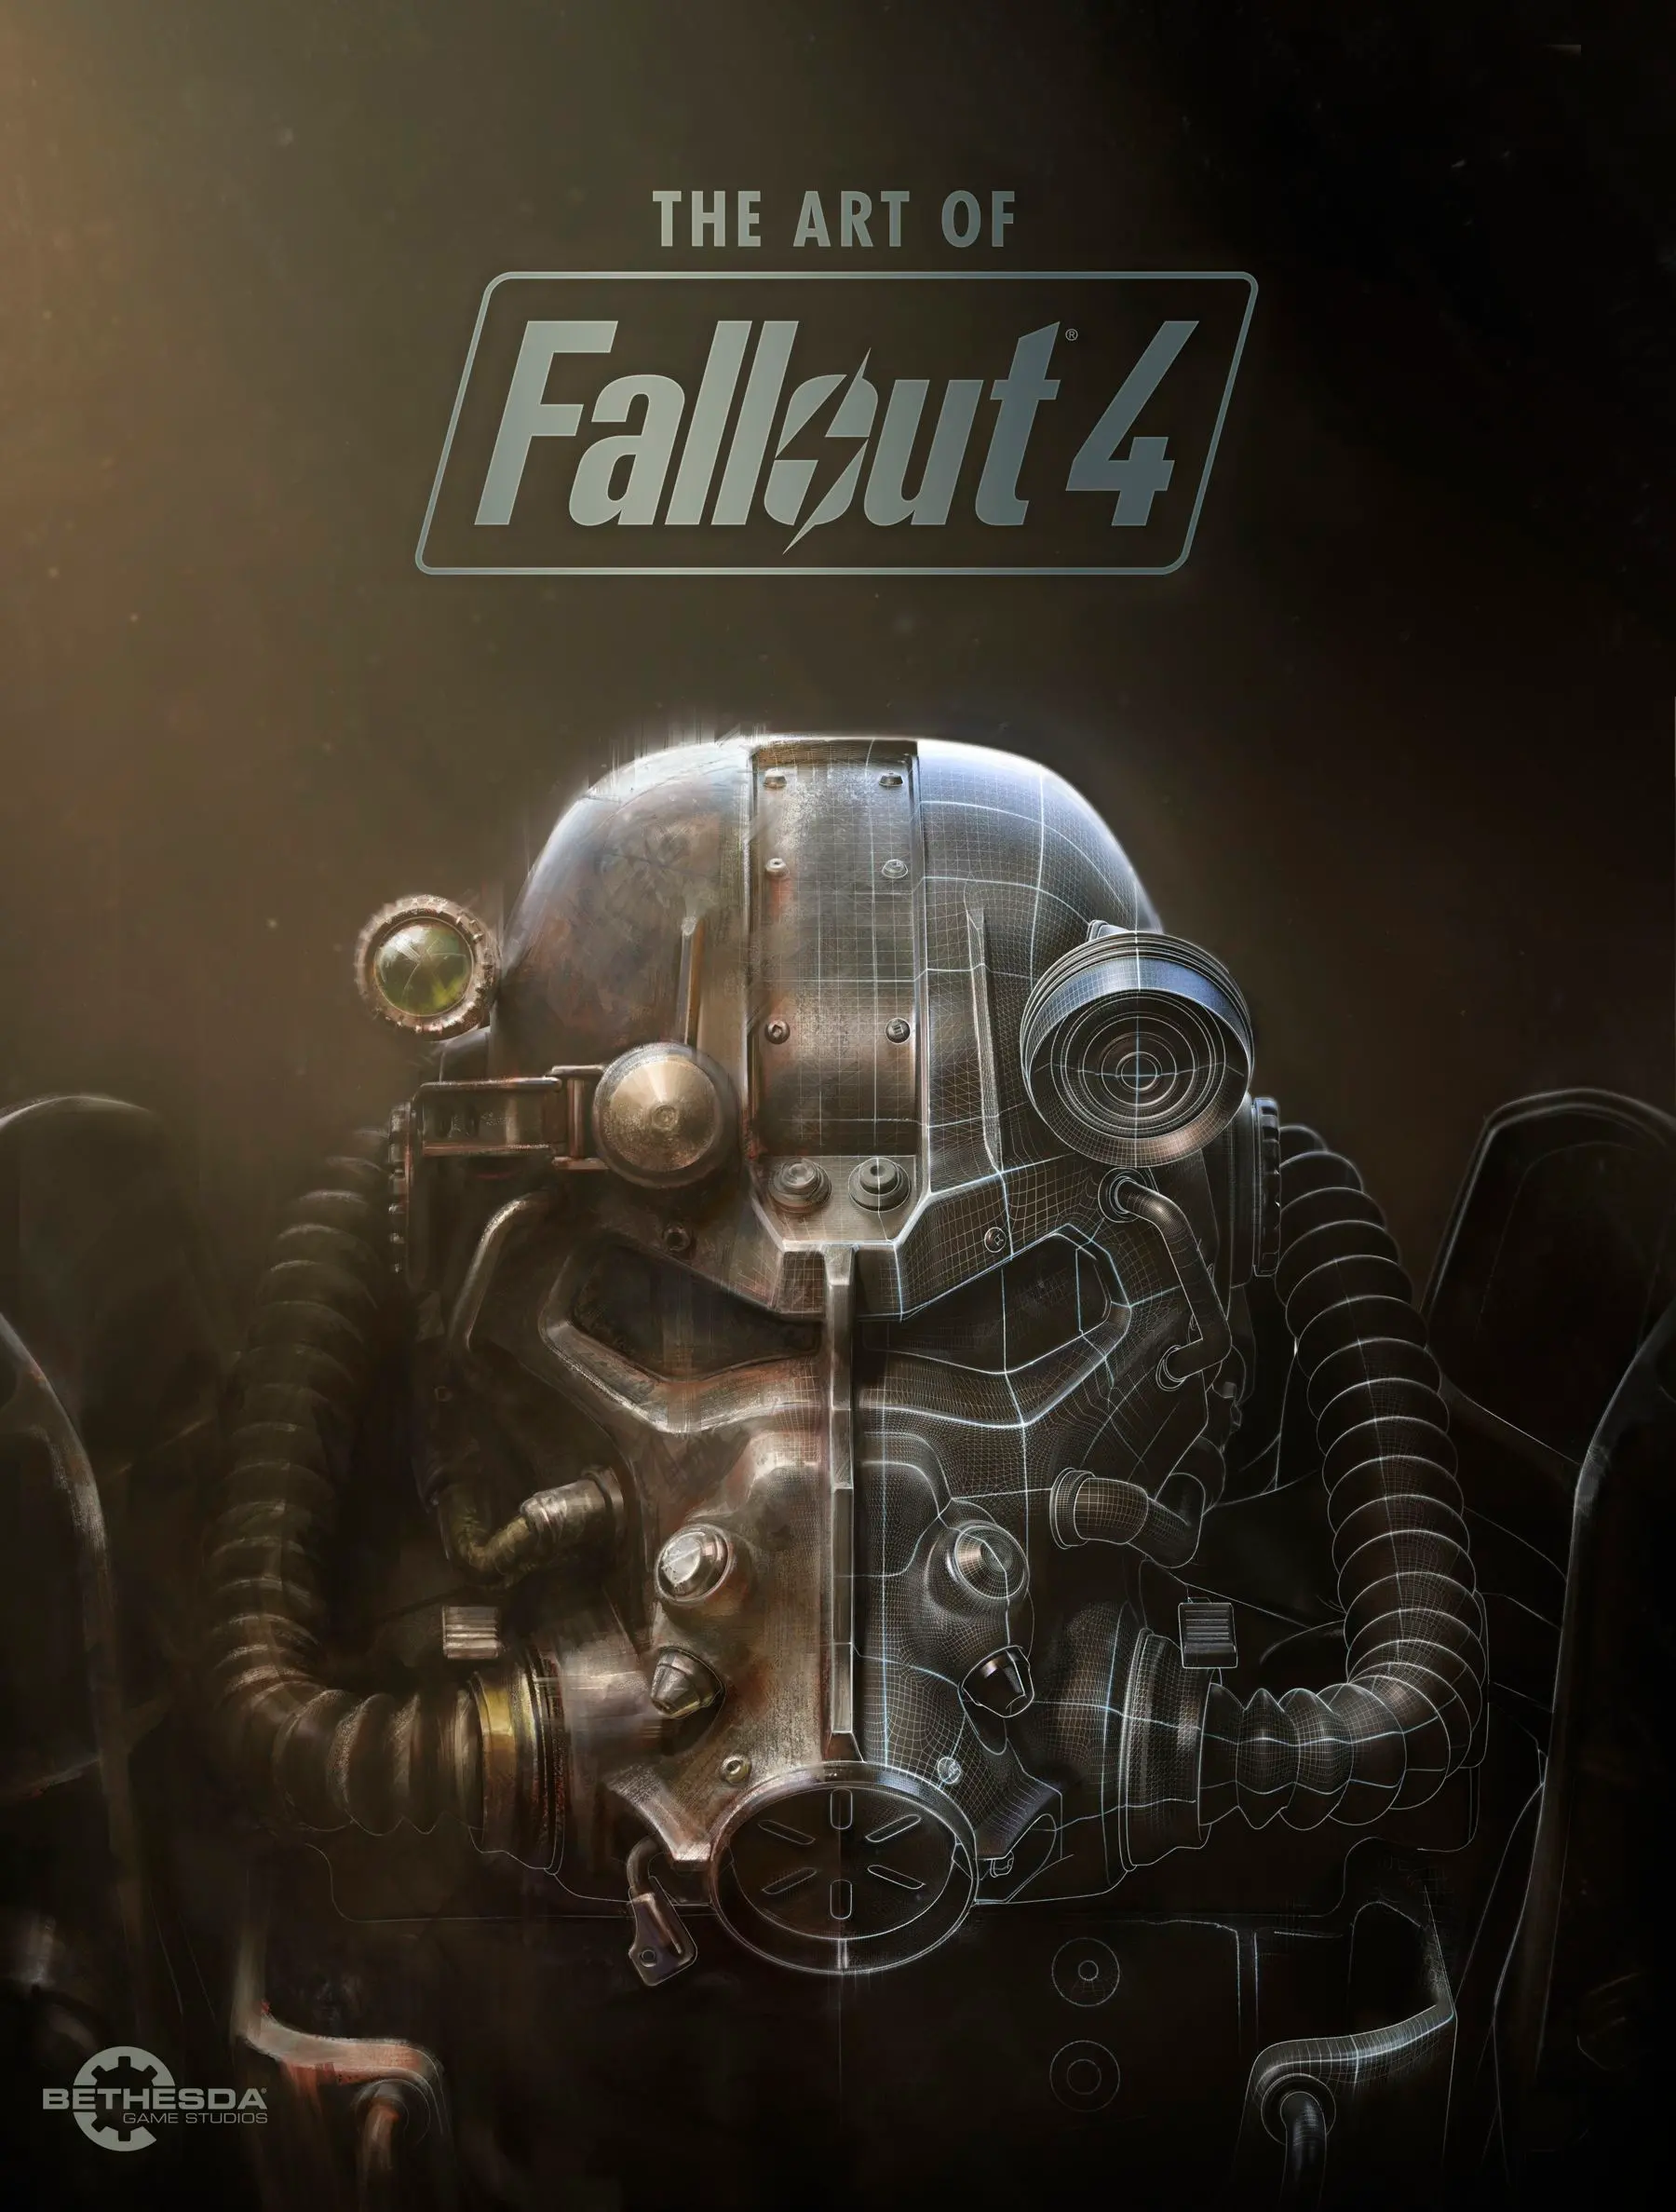 Tải Fallout 4 Việt Hóa Full cho PC